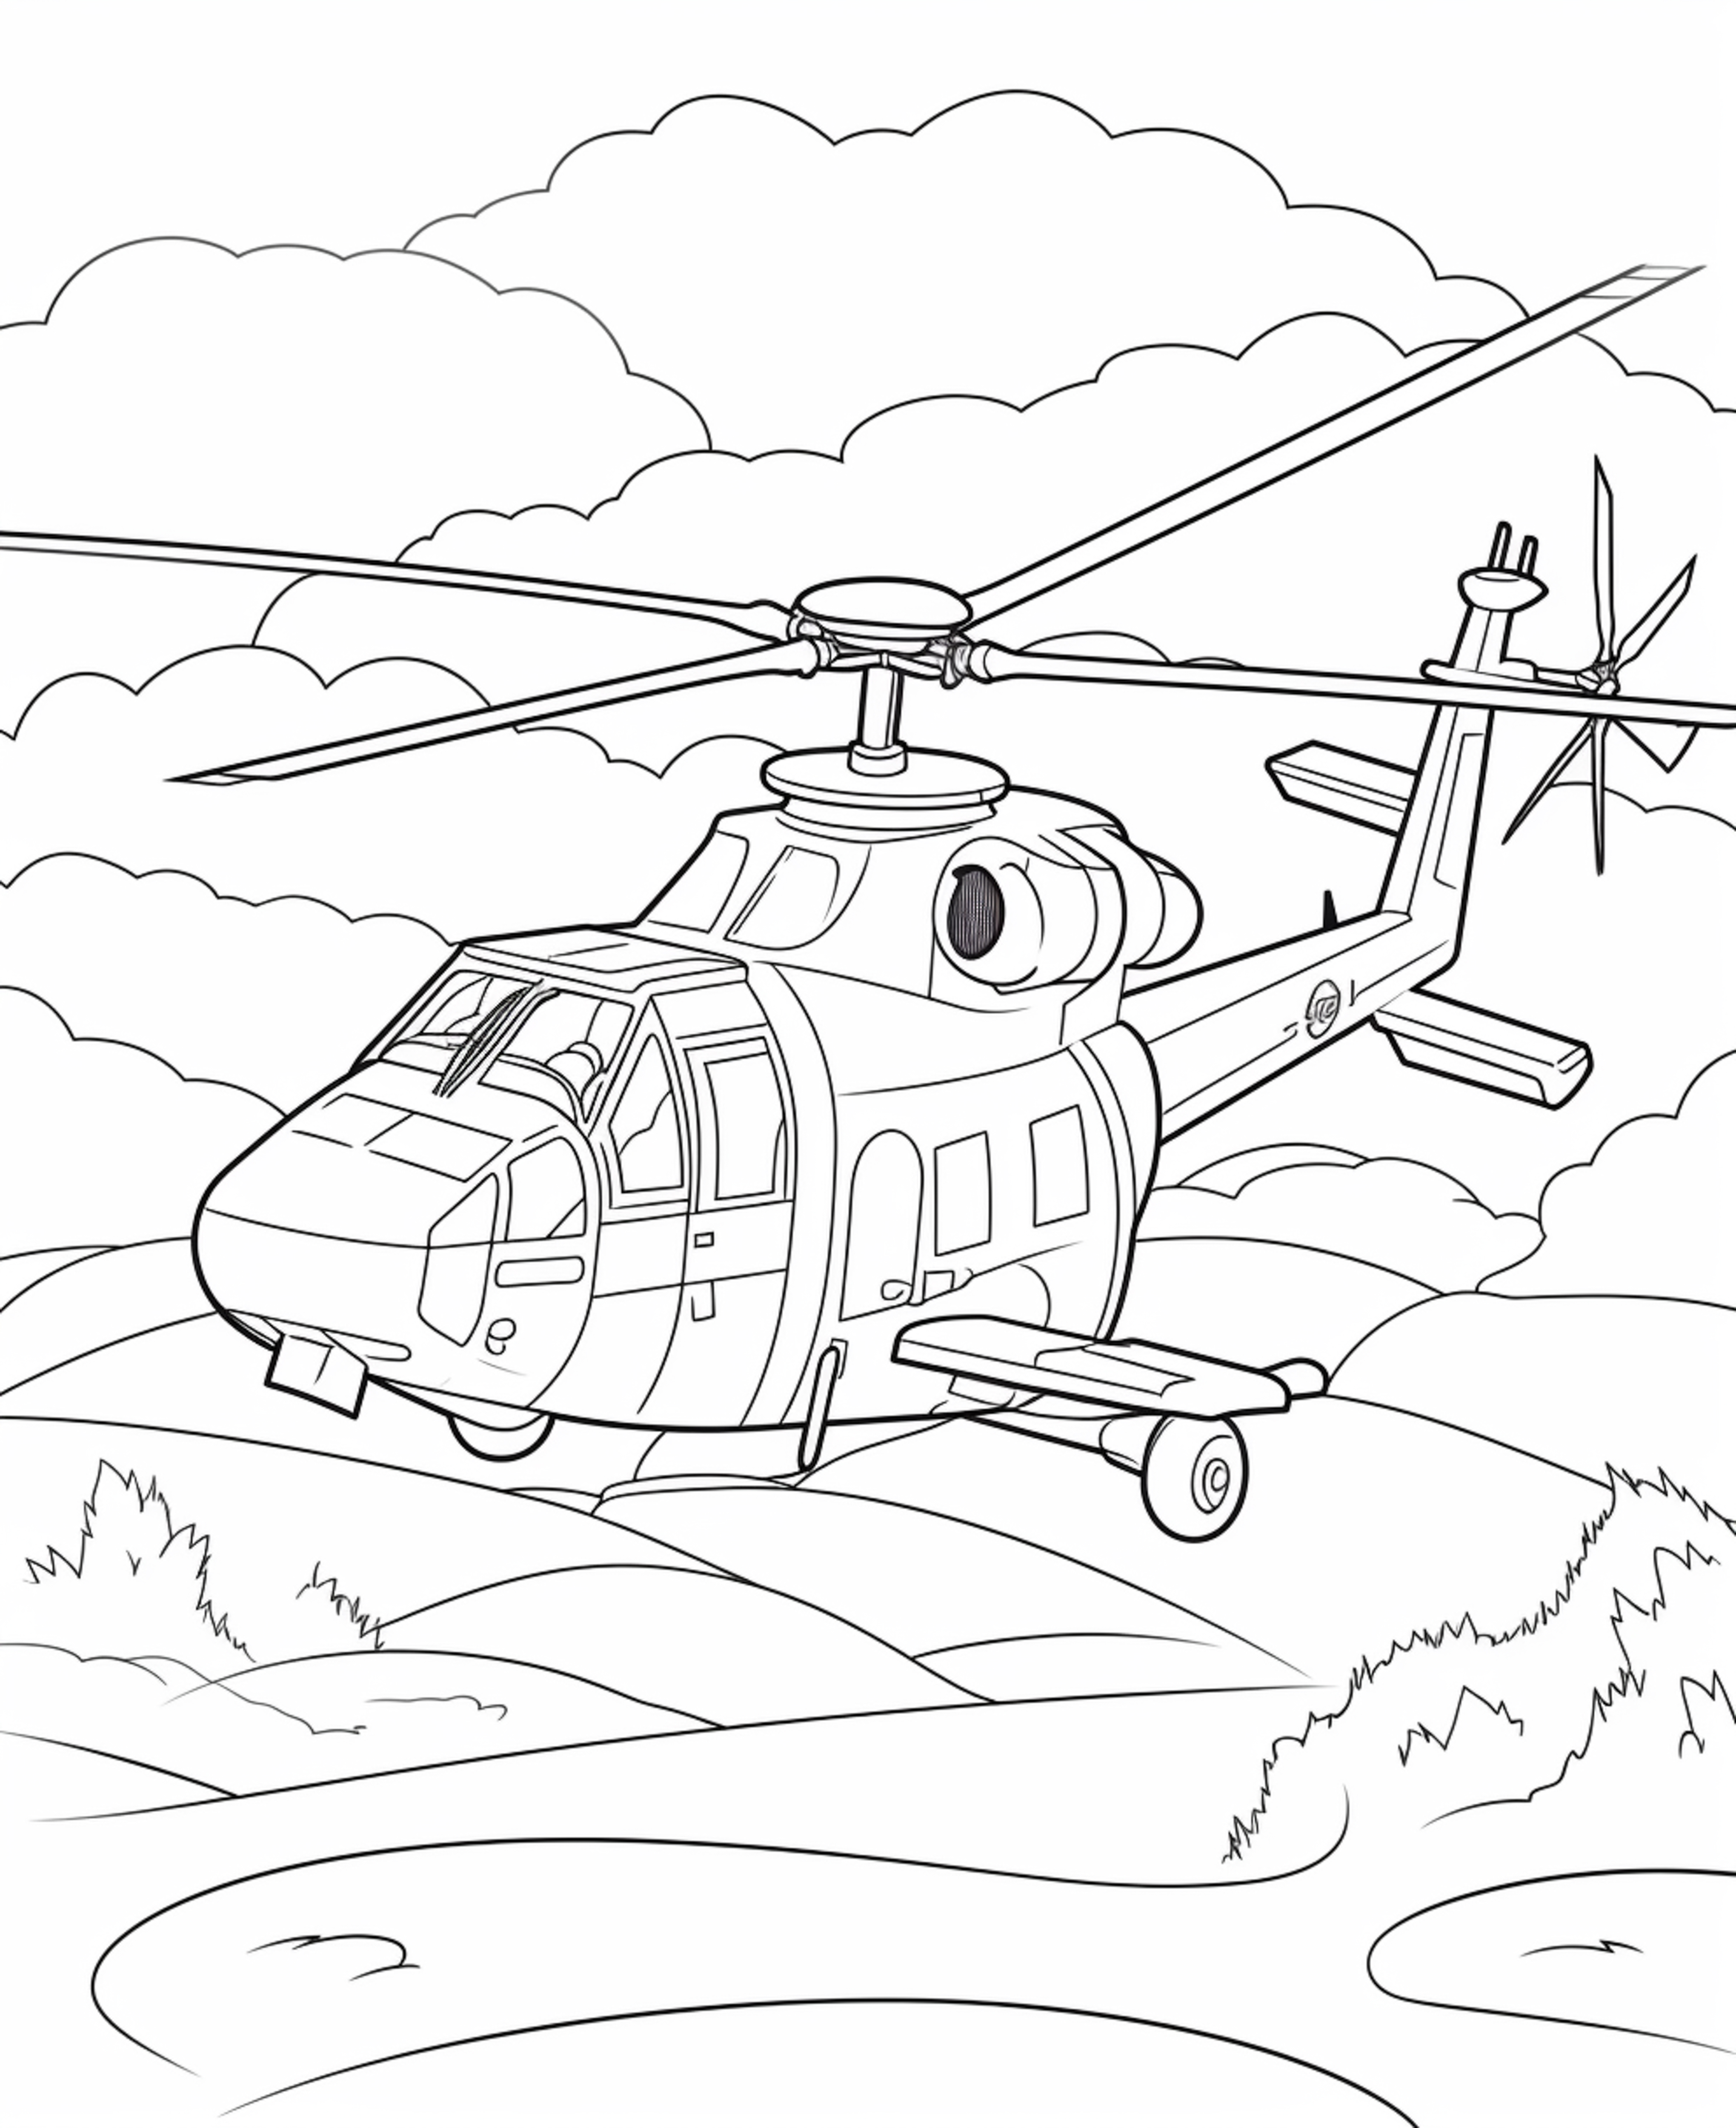 Раскраска вертолет «Экстремальные высоты» формата А4 в высоком качестве